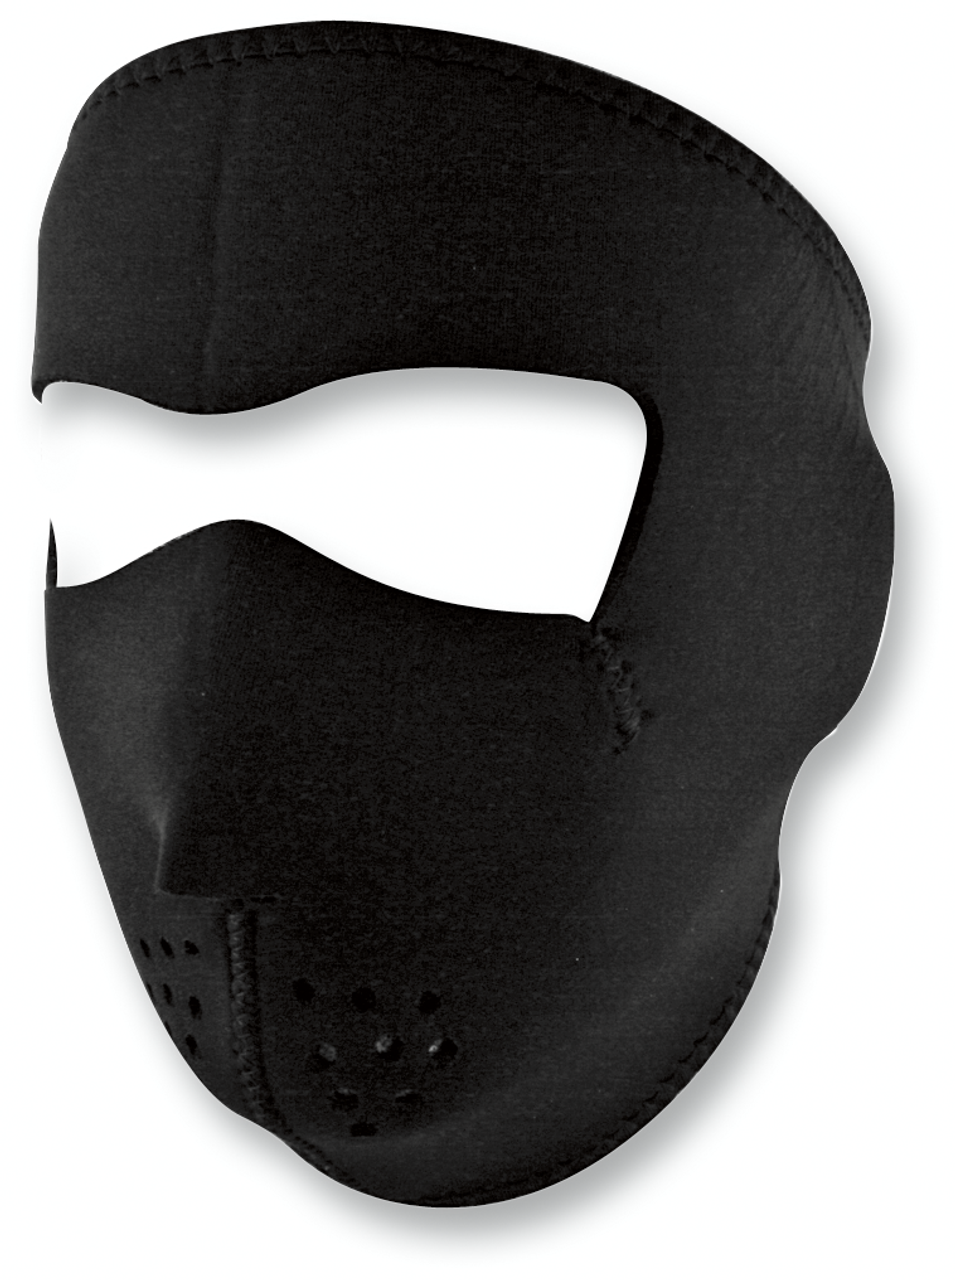 Deadpool Mesh Eyes Full Face Ski Mask Beanie